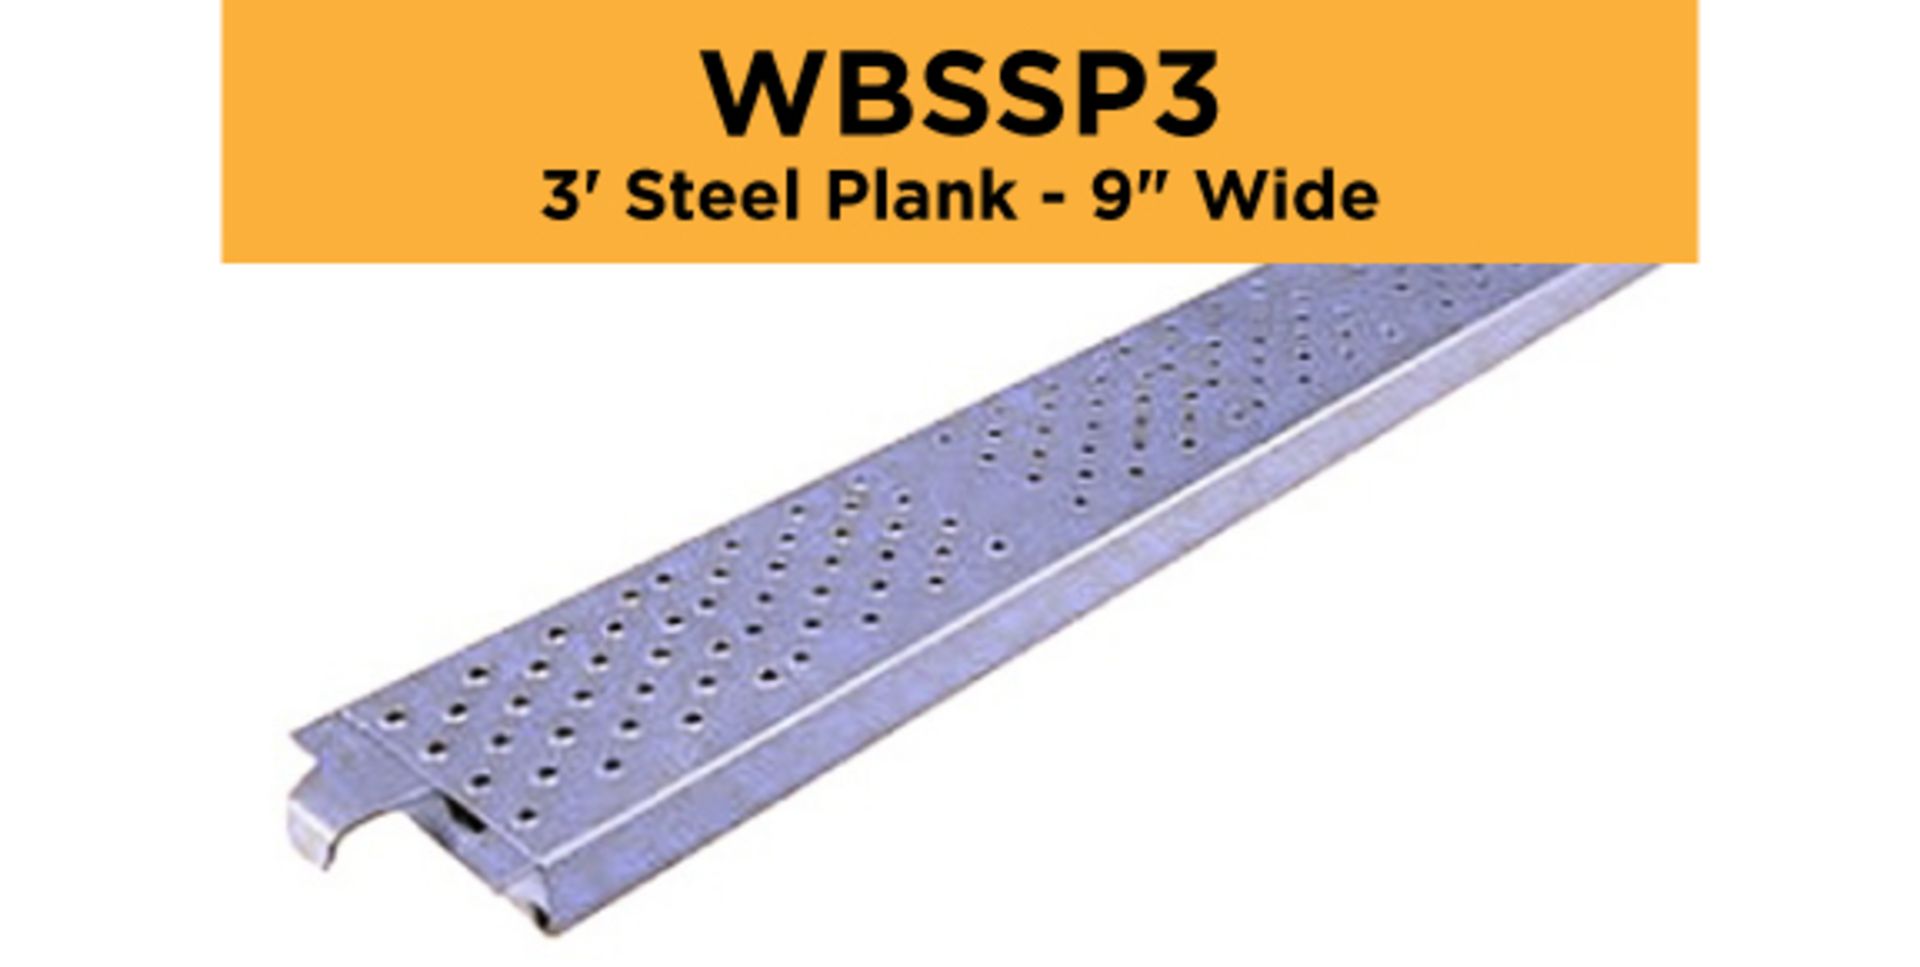 Lot of (256) 3' Steel Plank - 9" Wide - Bay Length 36" (0.91M); Type: WBSSP3 - (4) Racks Per Lot -